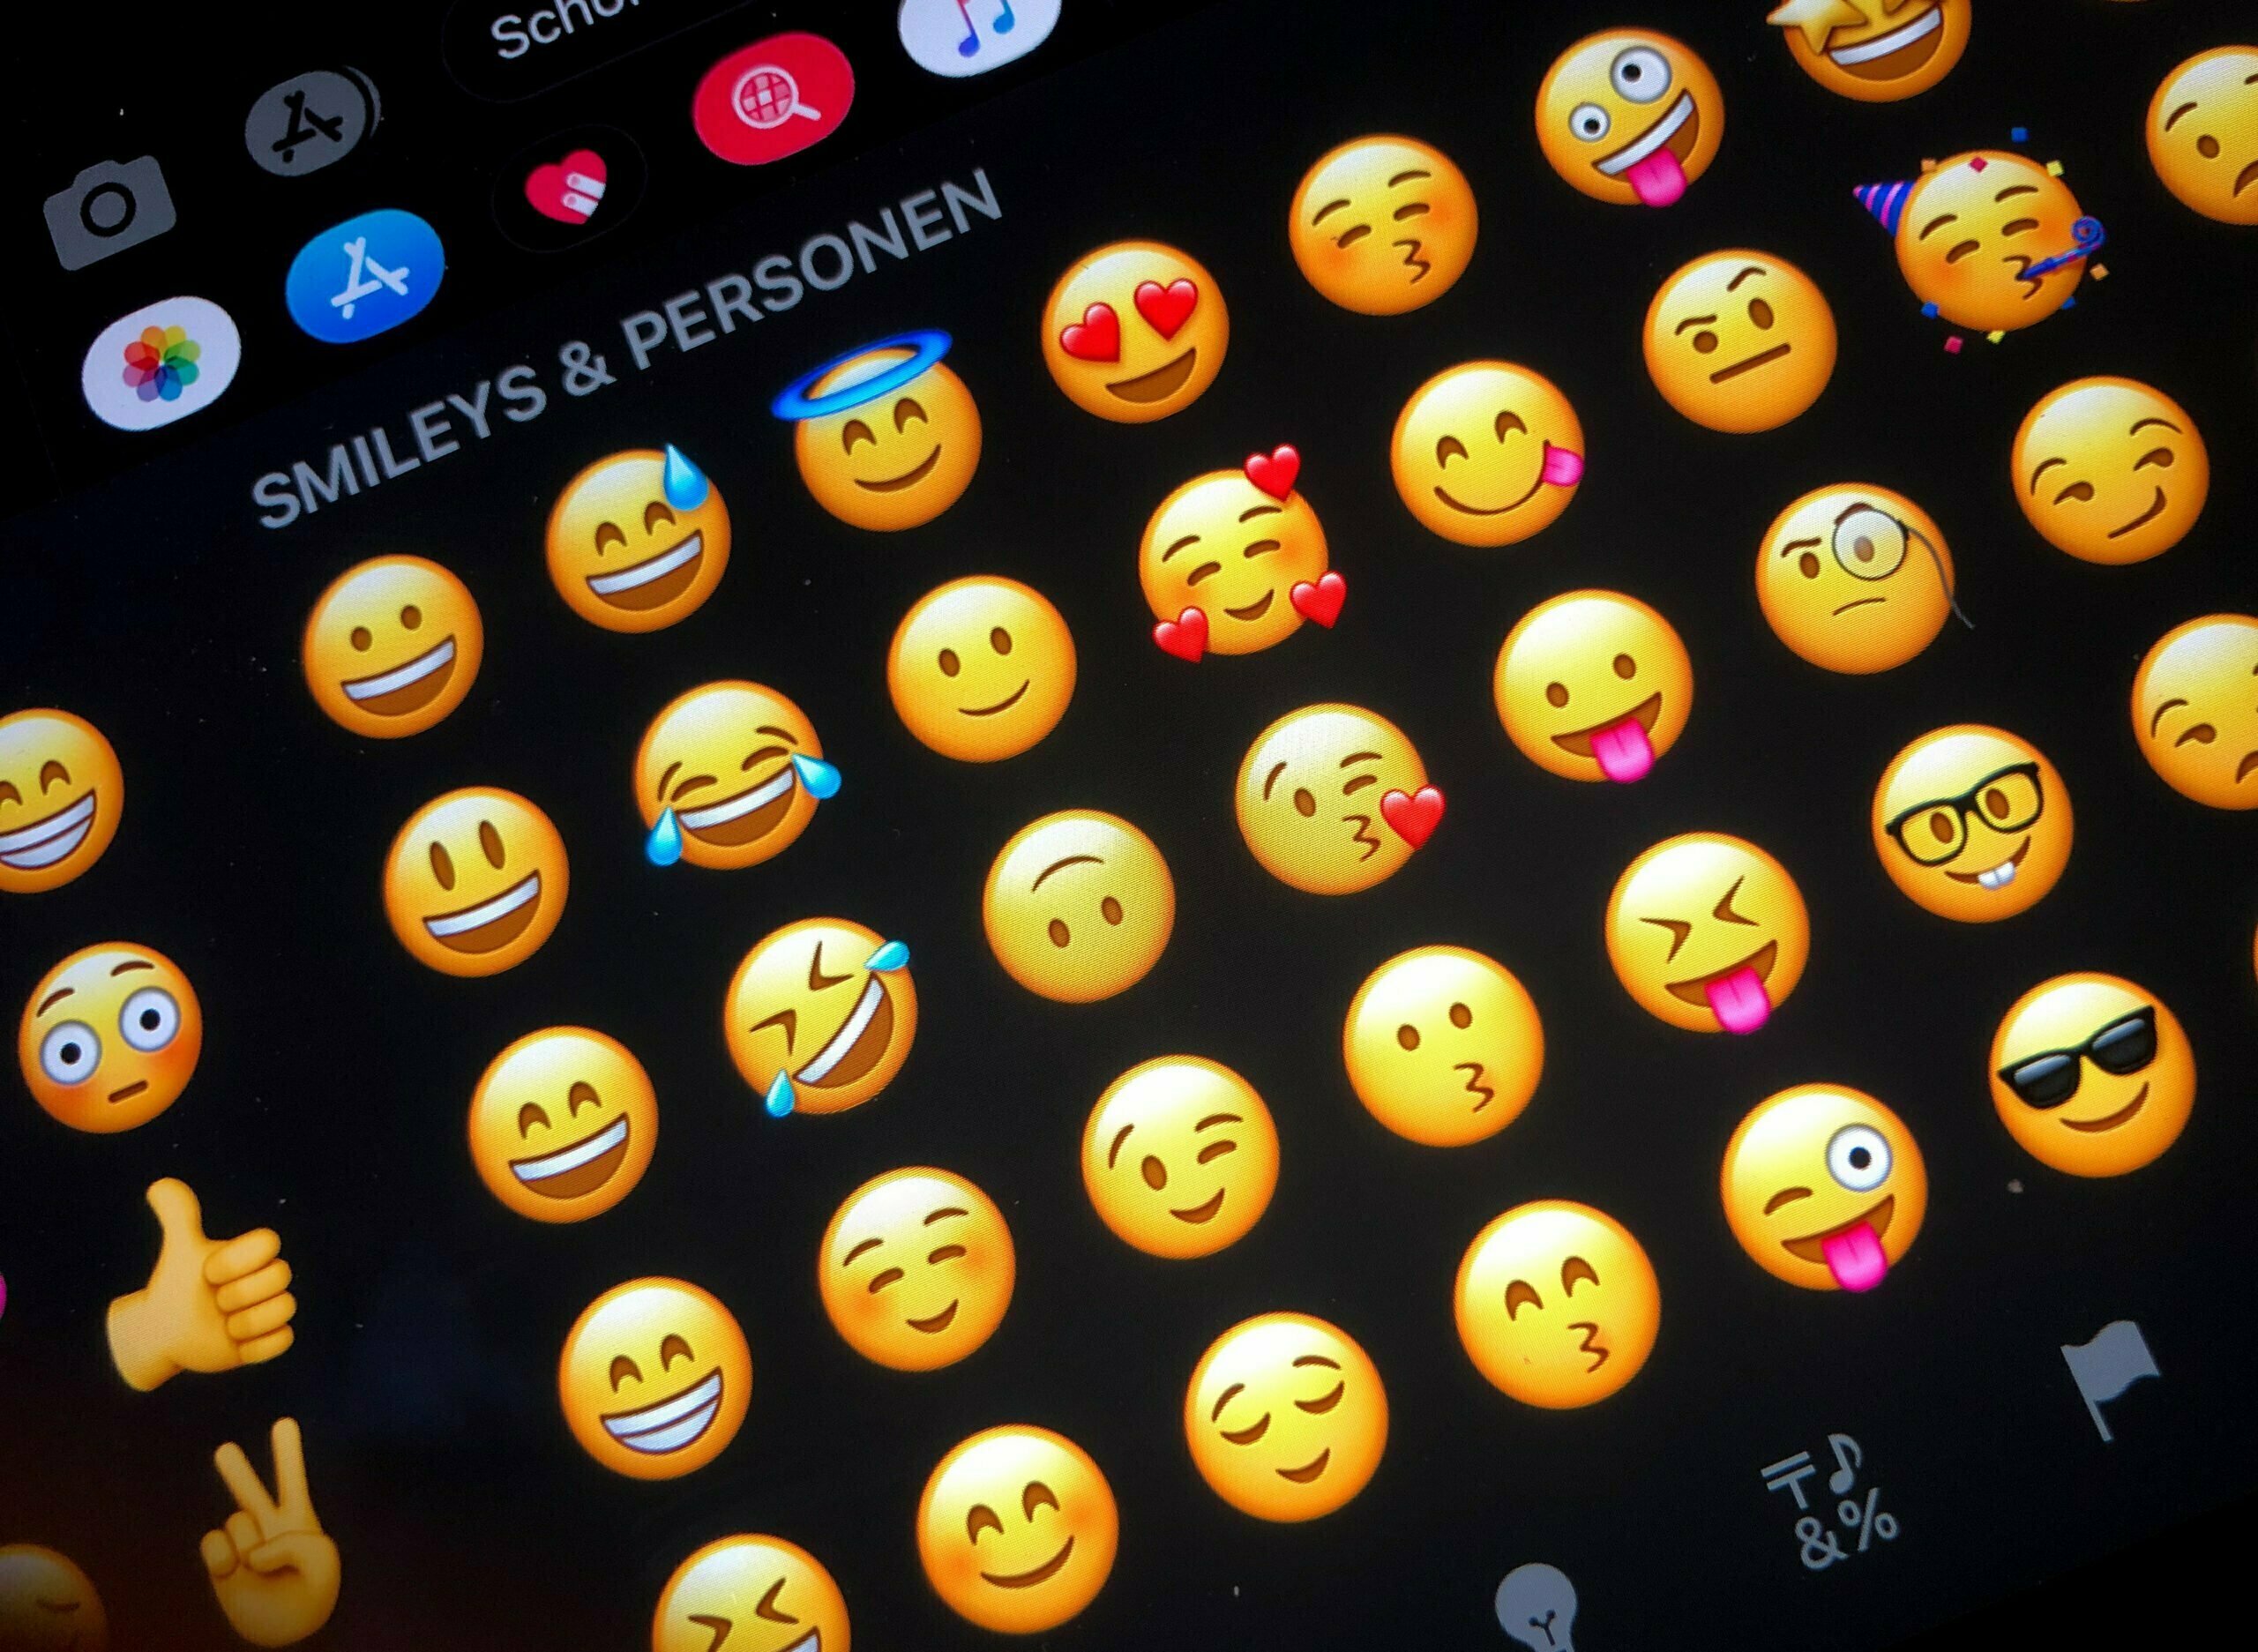 Pare agora mesmo de usar esse emojis 🗿🍷 eles tem um significado obsc